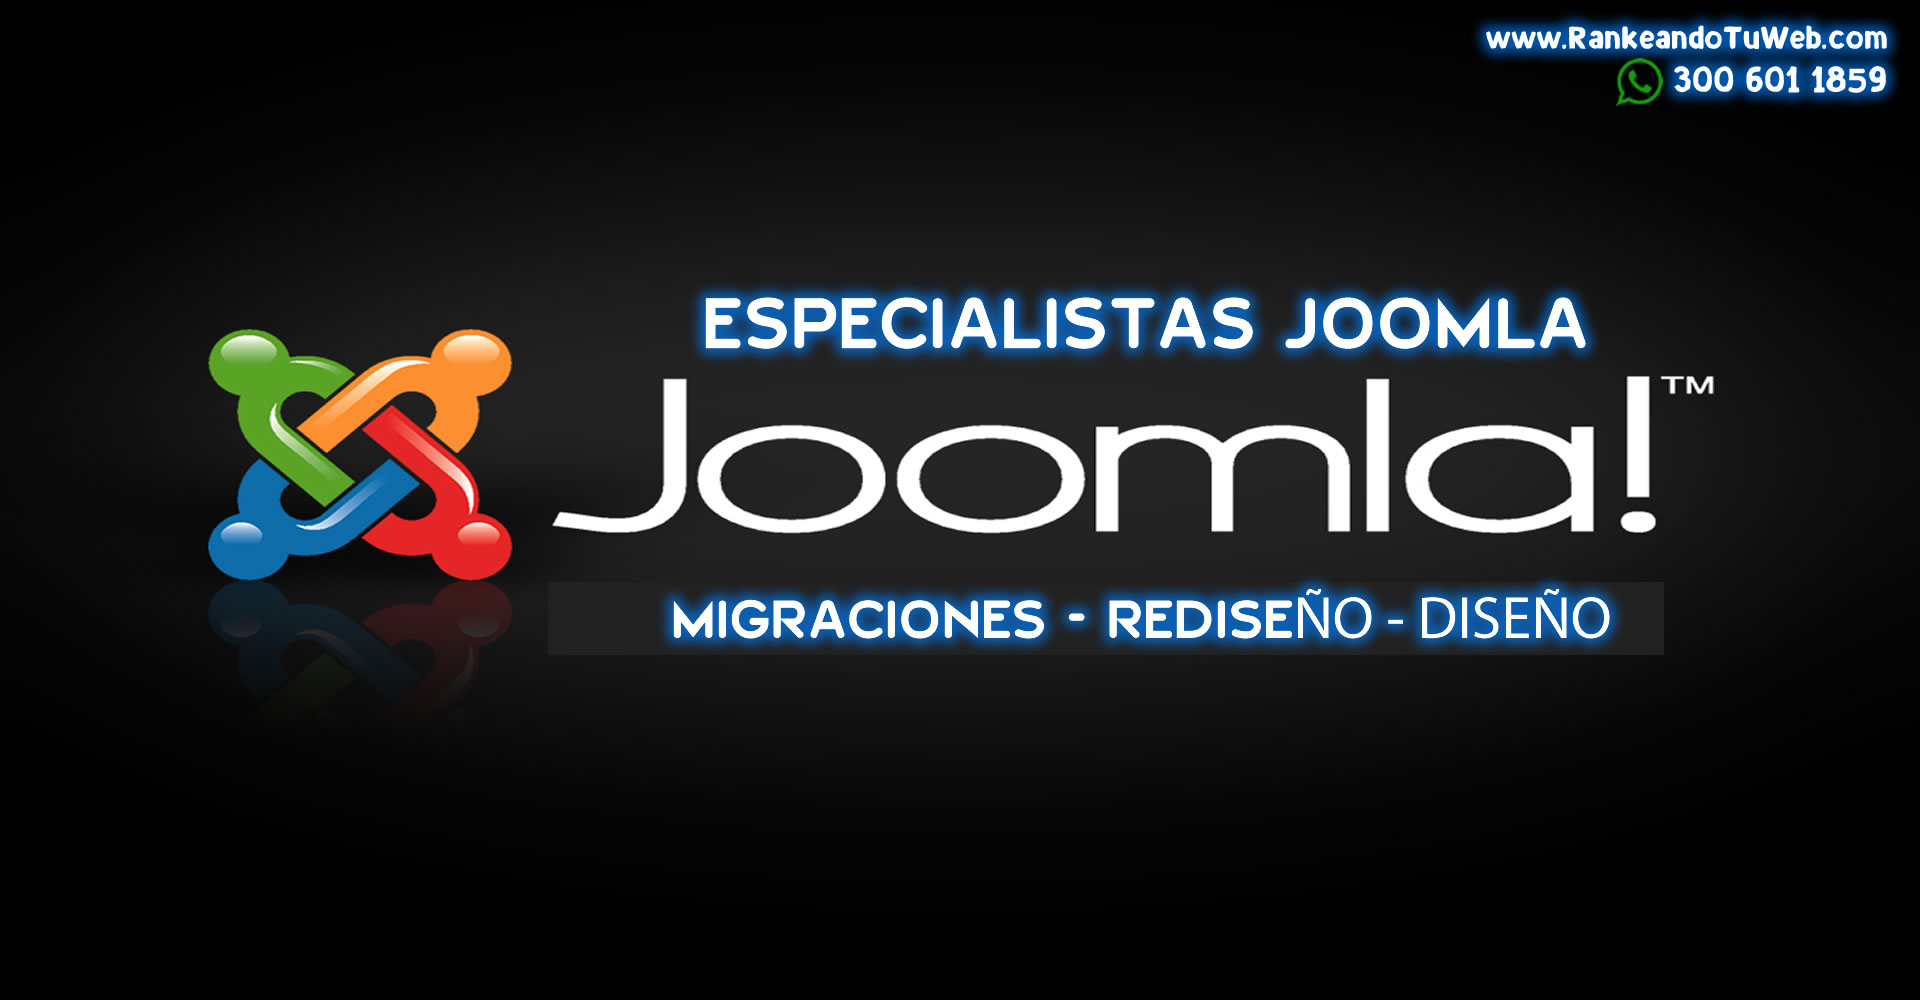 EXPERTOS en JOOMLA CHILE